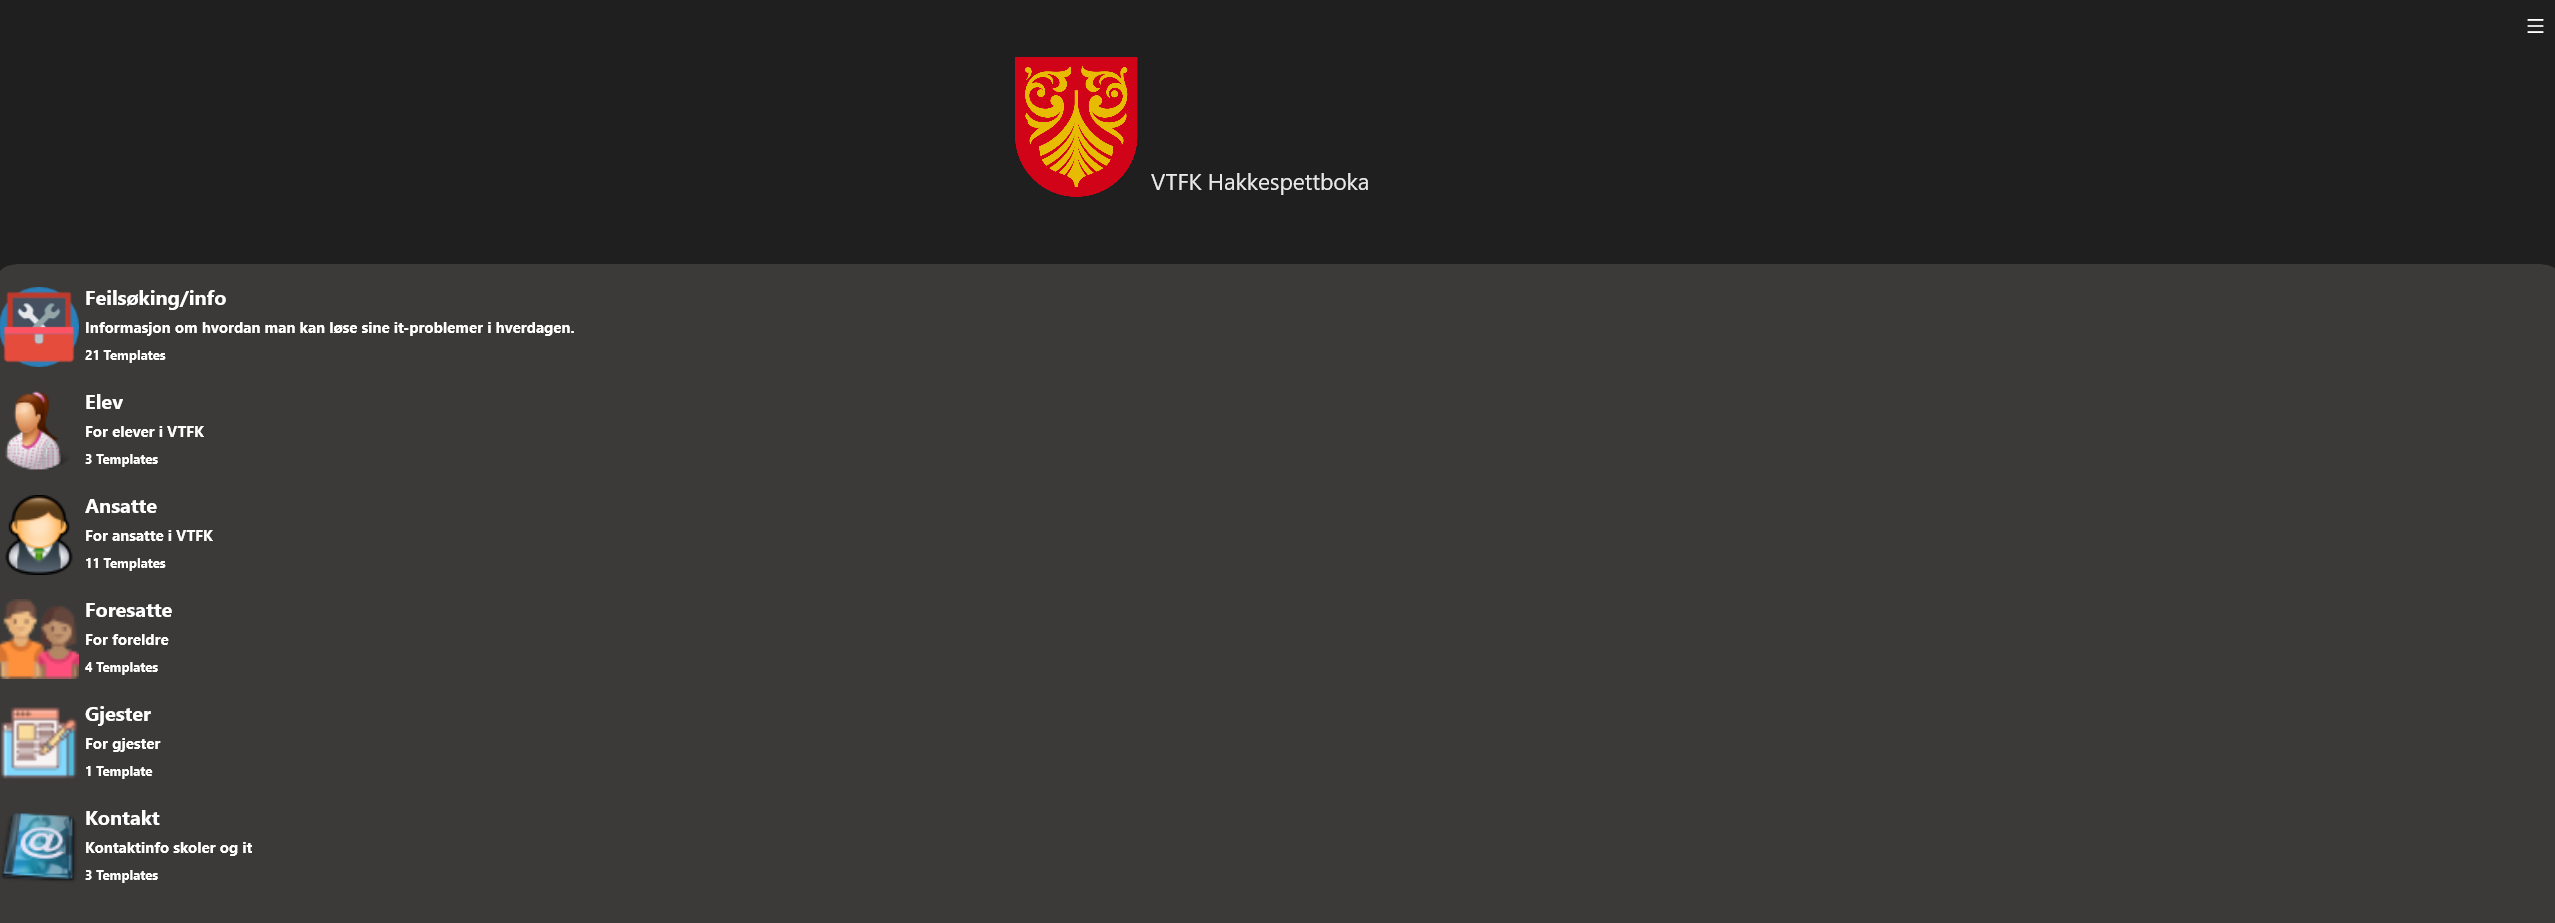 VTFK Hakkespettboka app